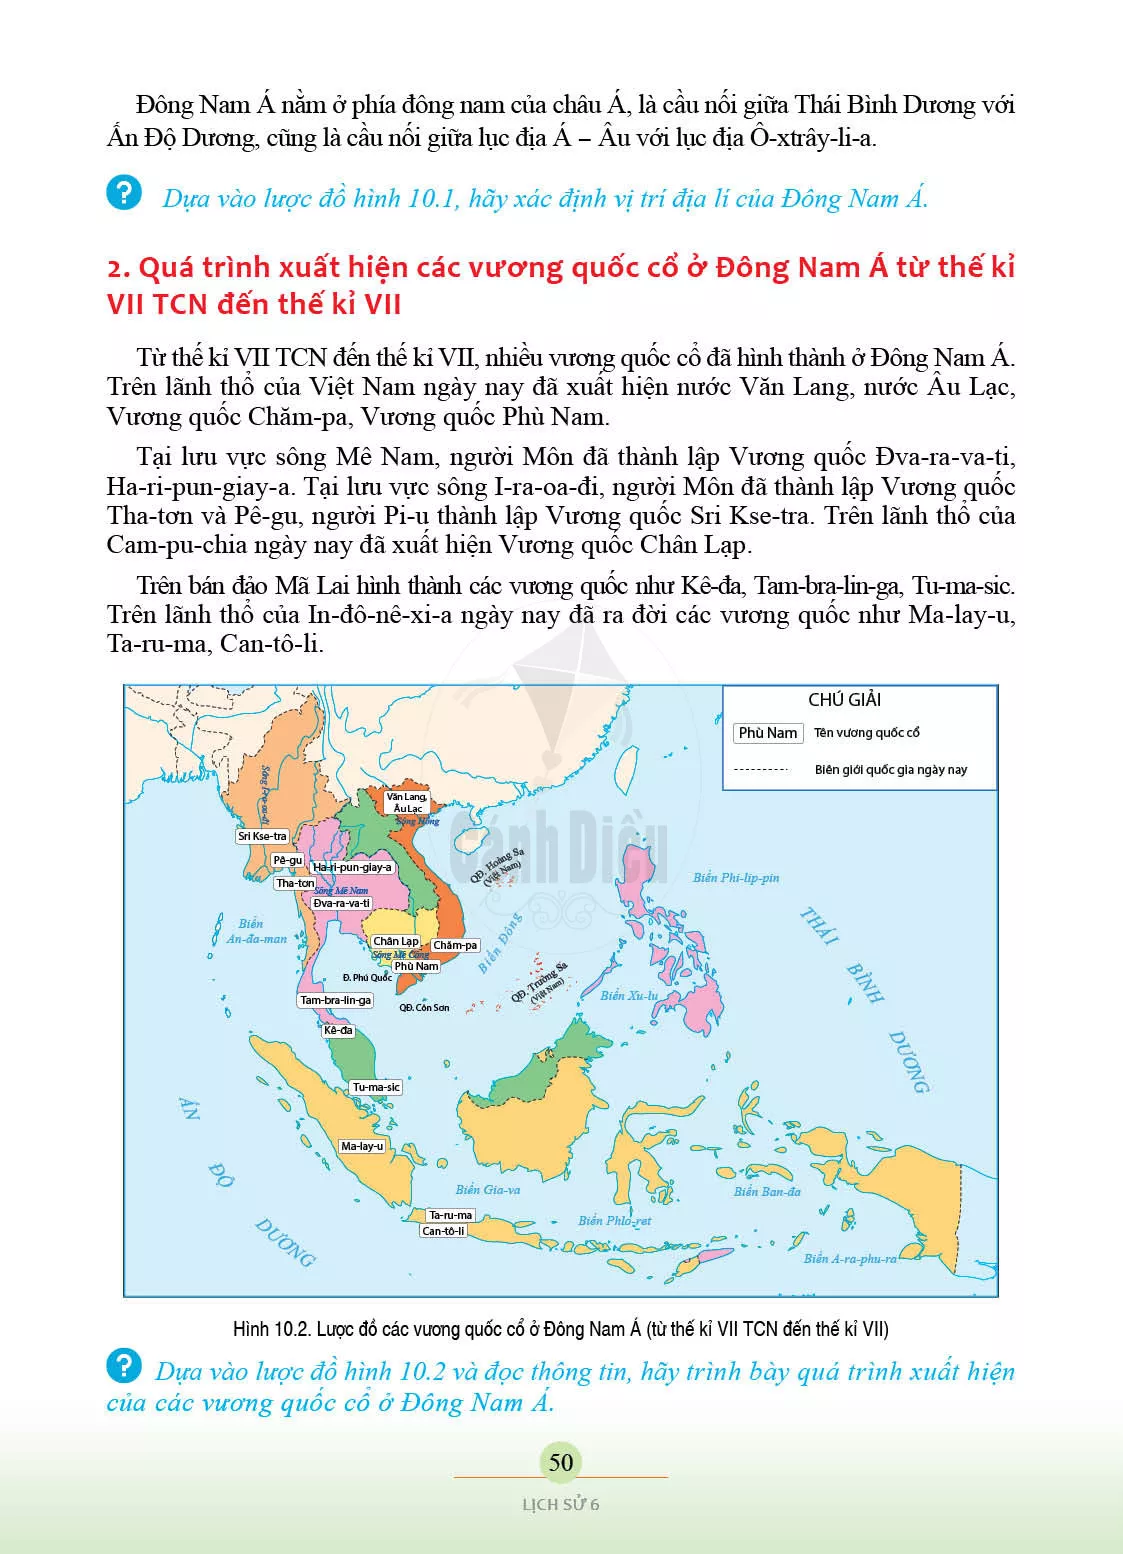 Bài 10. Sự ra đời và phát triển của các vương quốc ở Đông Nam Á (từ những thể kỉ tiếp giáp Công nguyên đến thế kỉ X)